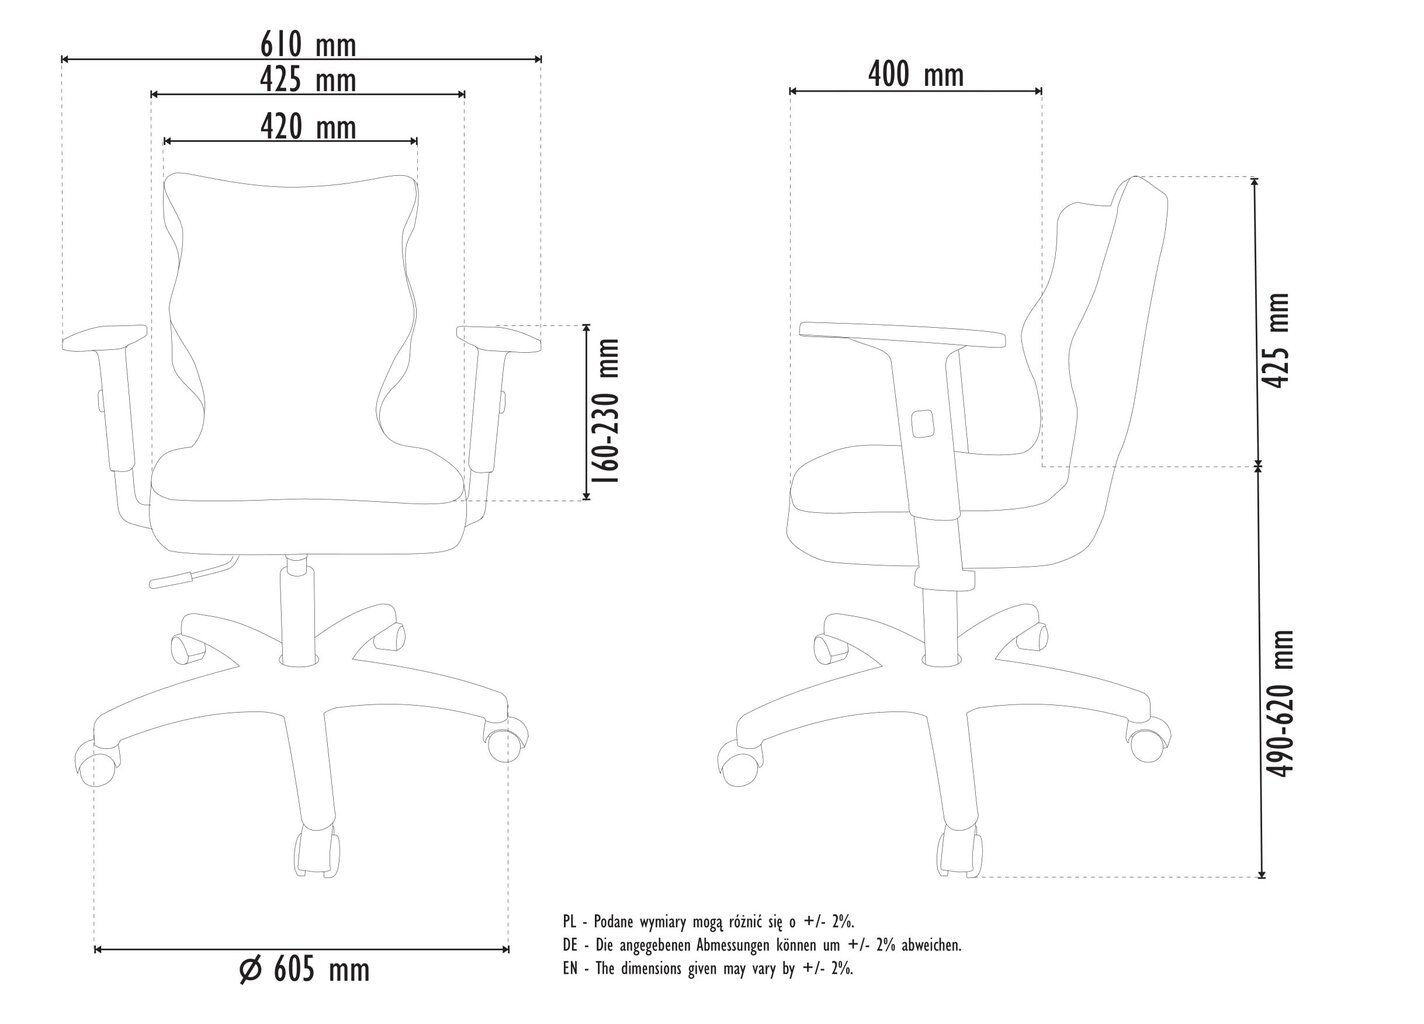 Biuro kėdė Entelo Good Chair Uni AT33, pilka/juoda kaina ir informacija | Biuro kėdės | pigu.lt